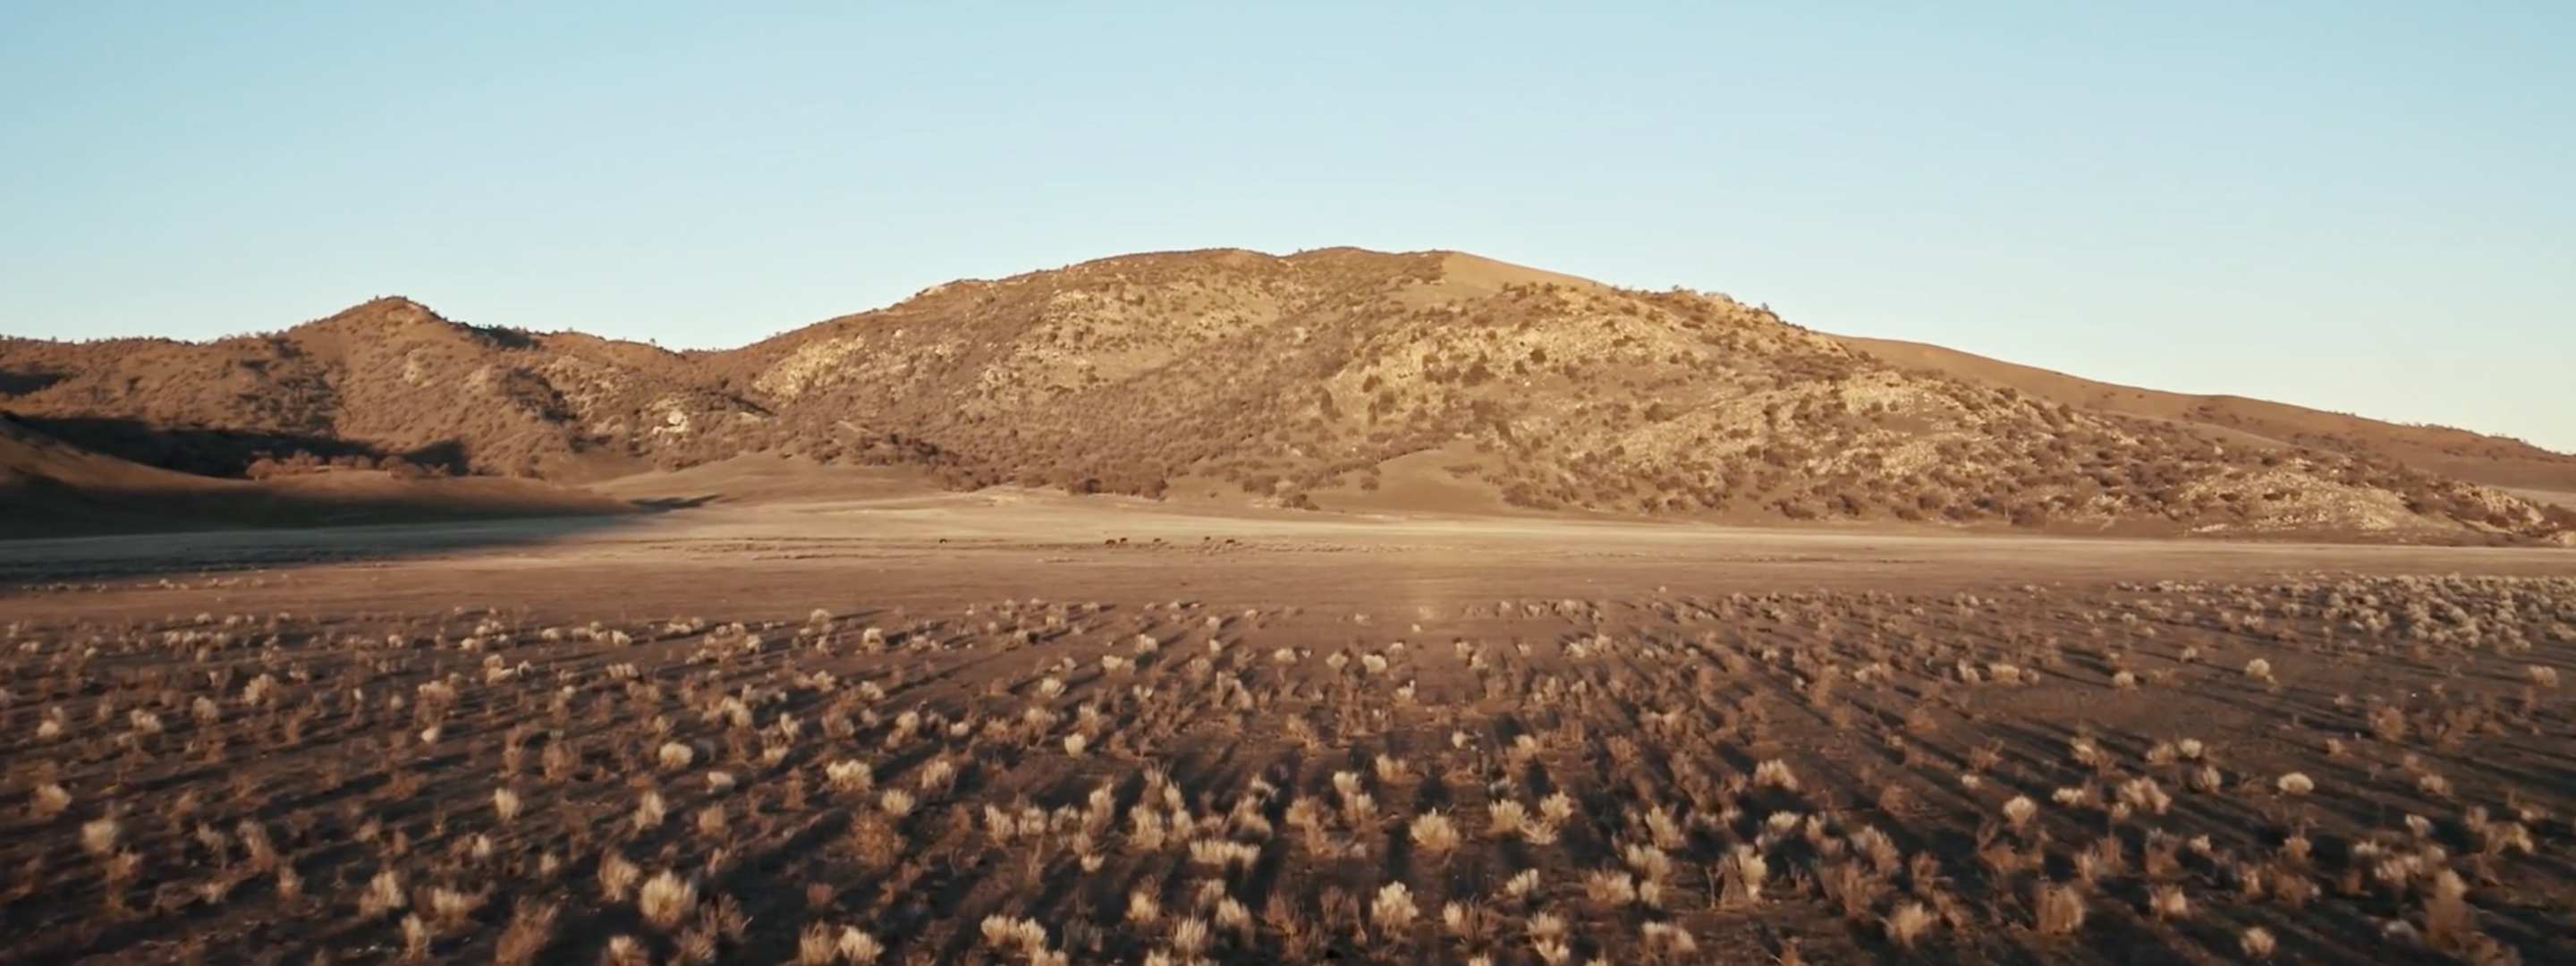 <a href="https://www.capgemini.com/news/inside-stories/mojave-desert/"></a><a href="/co-es/news/inside-stories/desierto-de-mojave/">El desierto de Mojave: datos de tortugas y neumáticos</a>